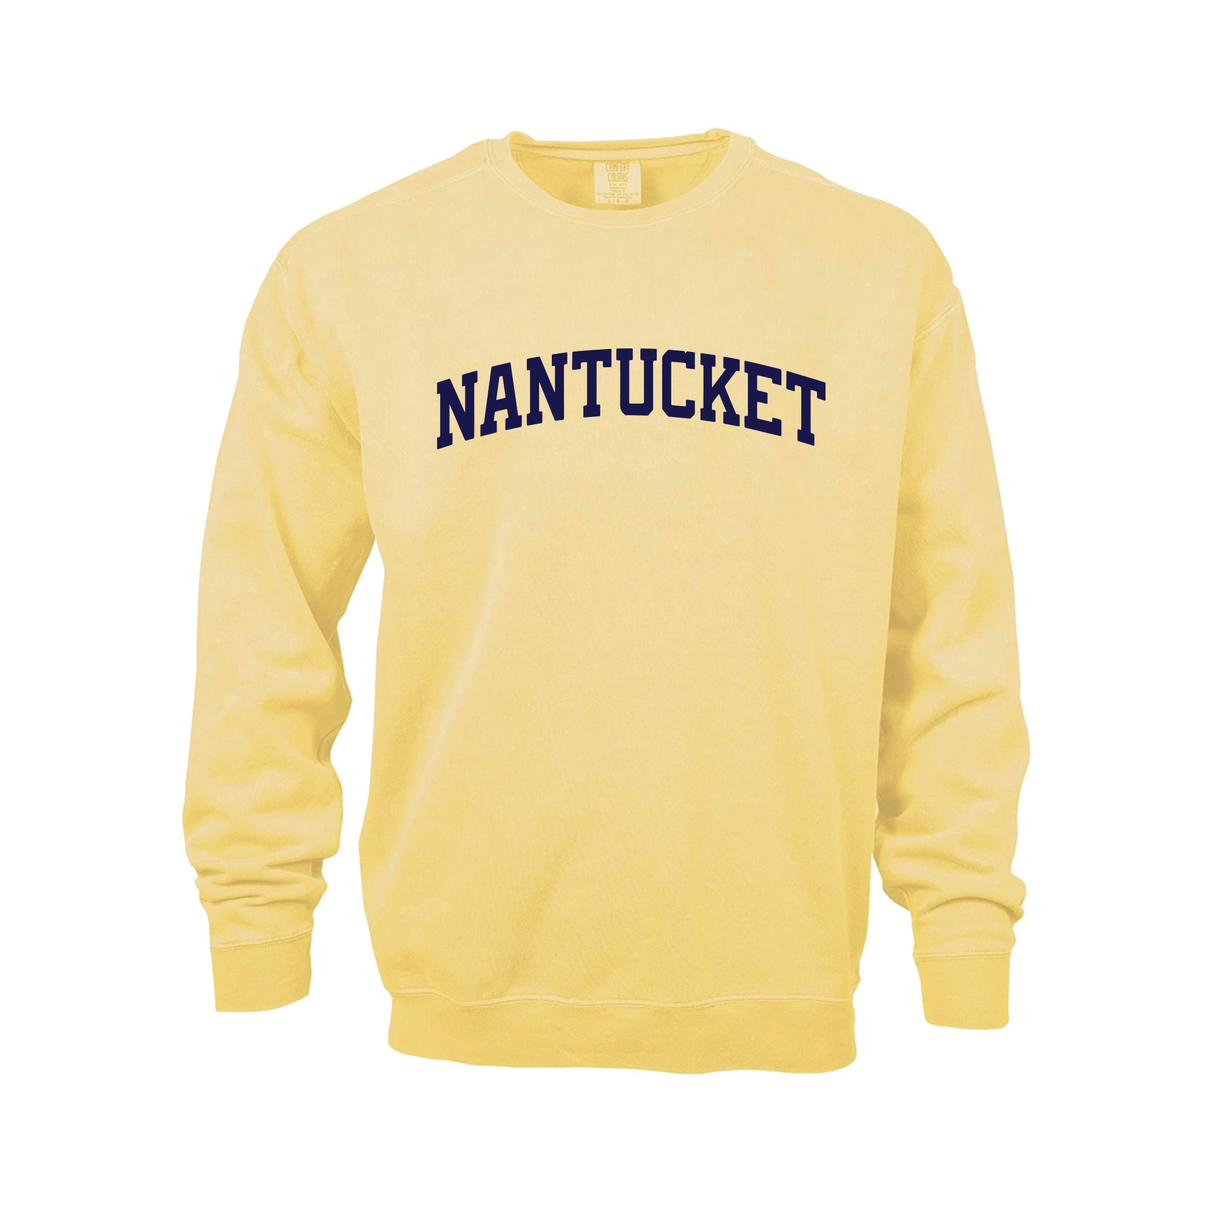 Nantucket Sweatshirt (Tuckernuck Yellow)